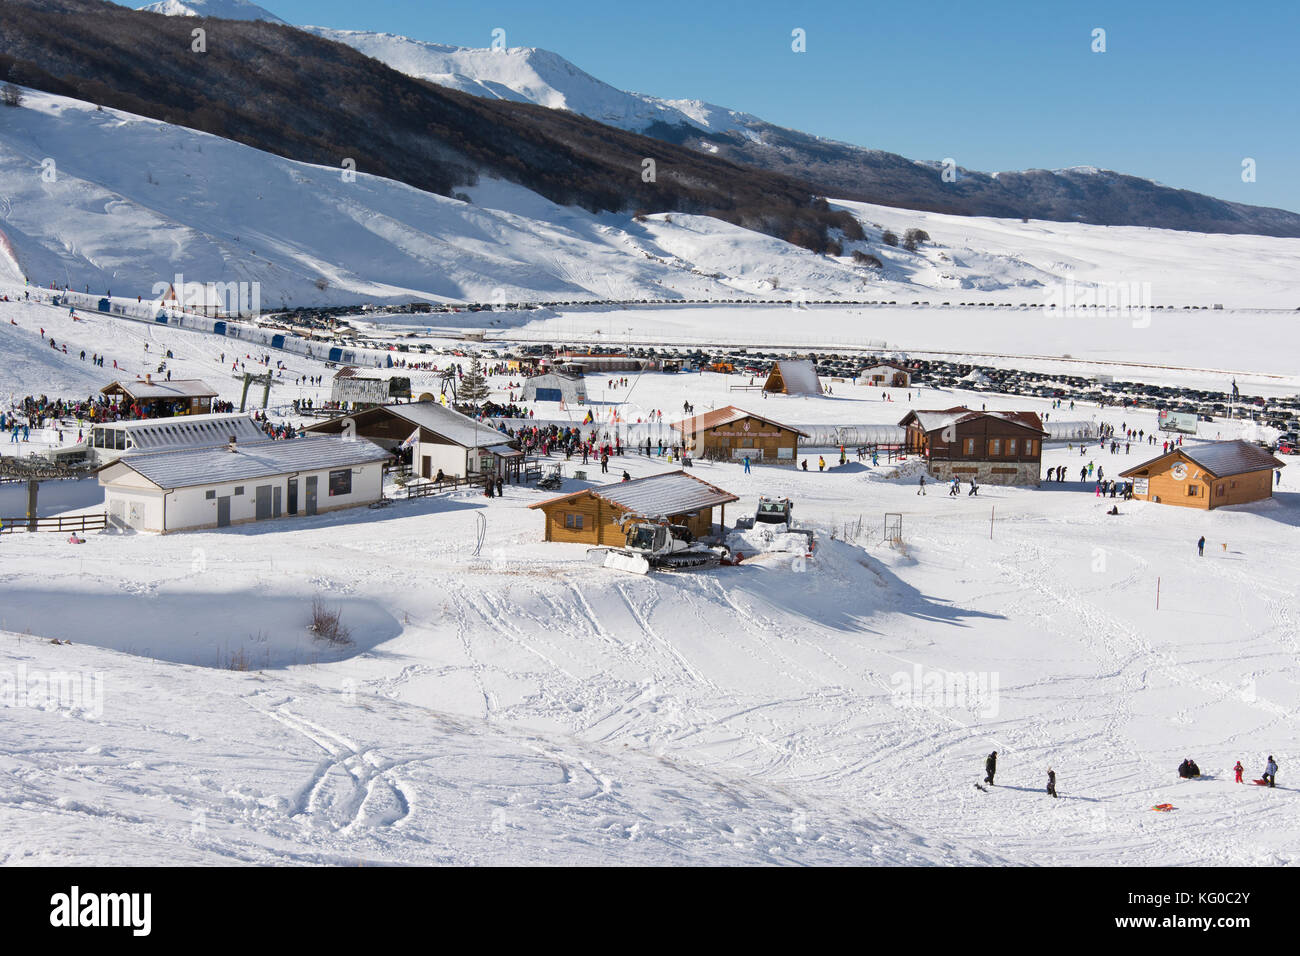 Campo Felice, ITALIE - Le 14 janvier 2017 : célèbre station de ski dans les Abruzzes, sur les montagnes des Apennins, à quelques kilomètres de Rome. Banque D'Images